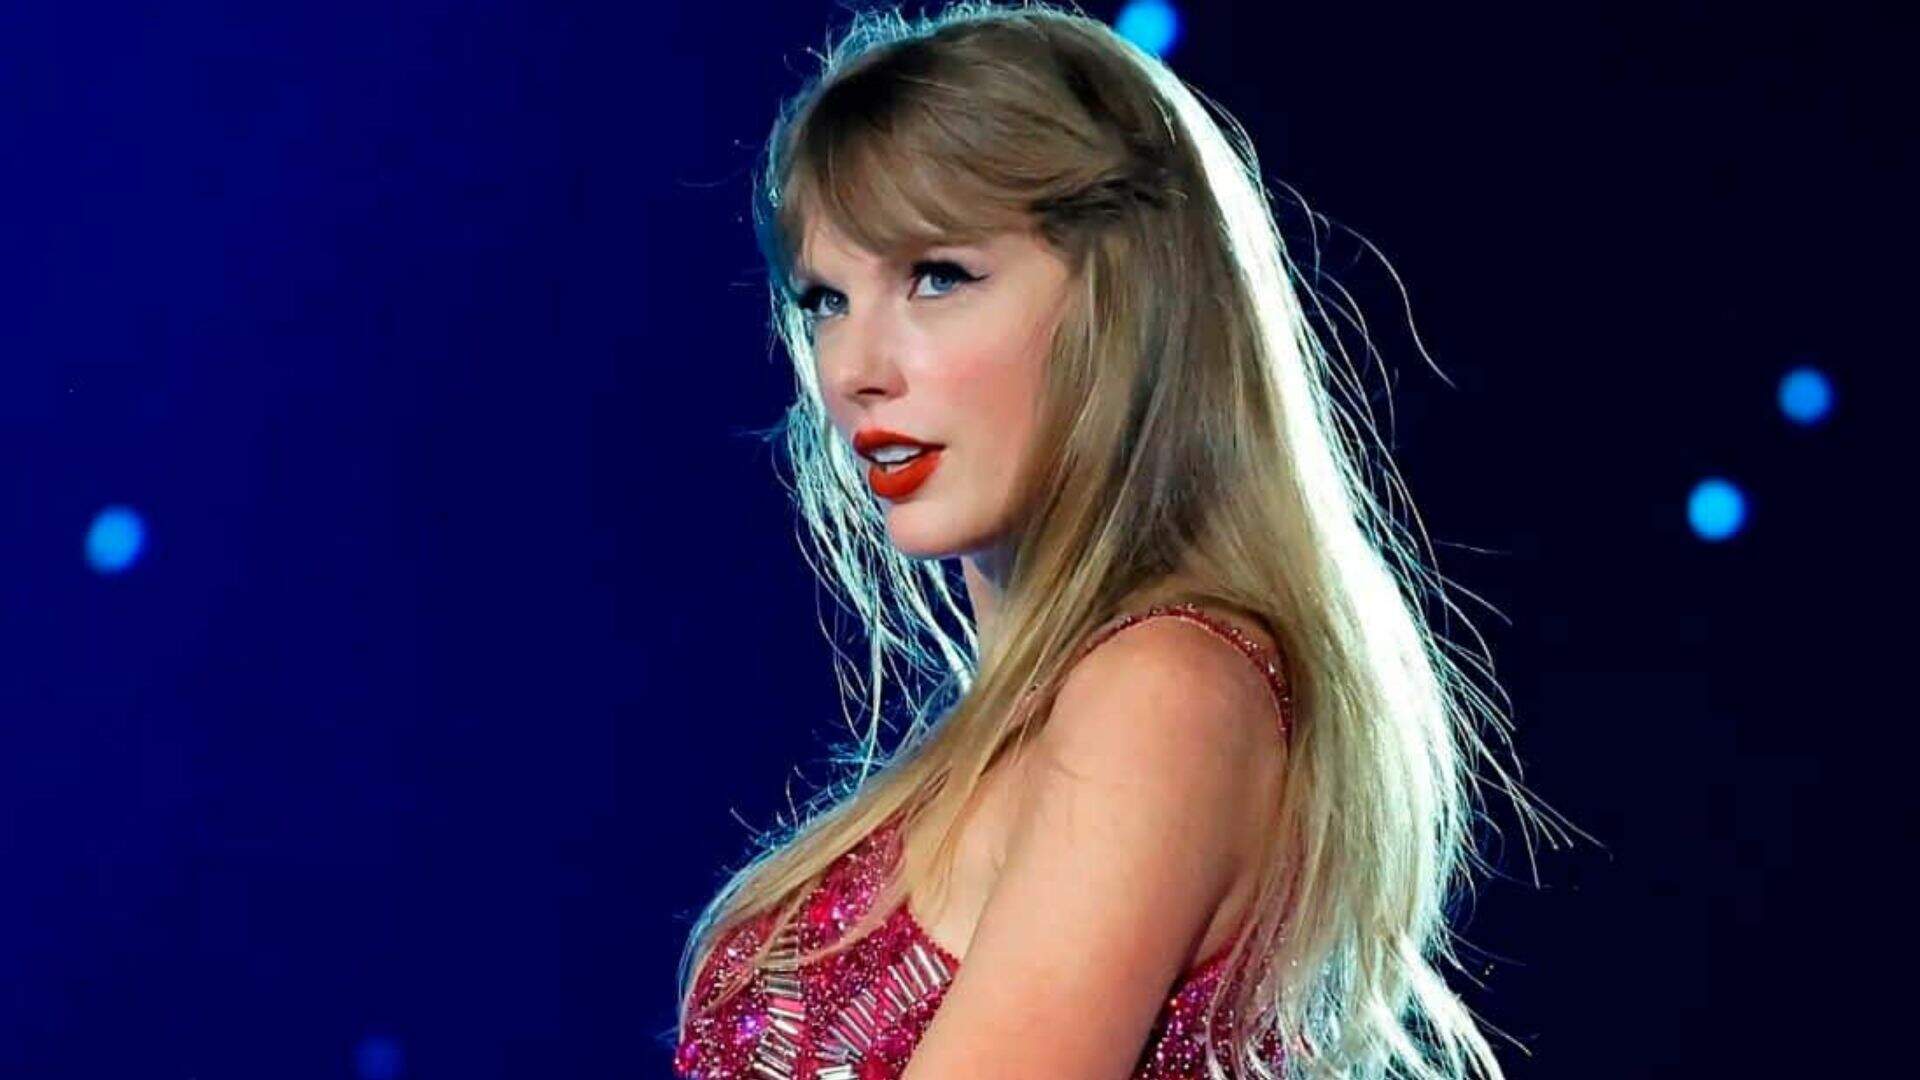 Em sua segunda apresentação no Brasil, Taylor Swift faz homenagem emocionante para fã que morreu durante seu show no RJ